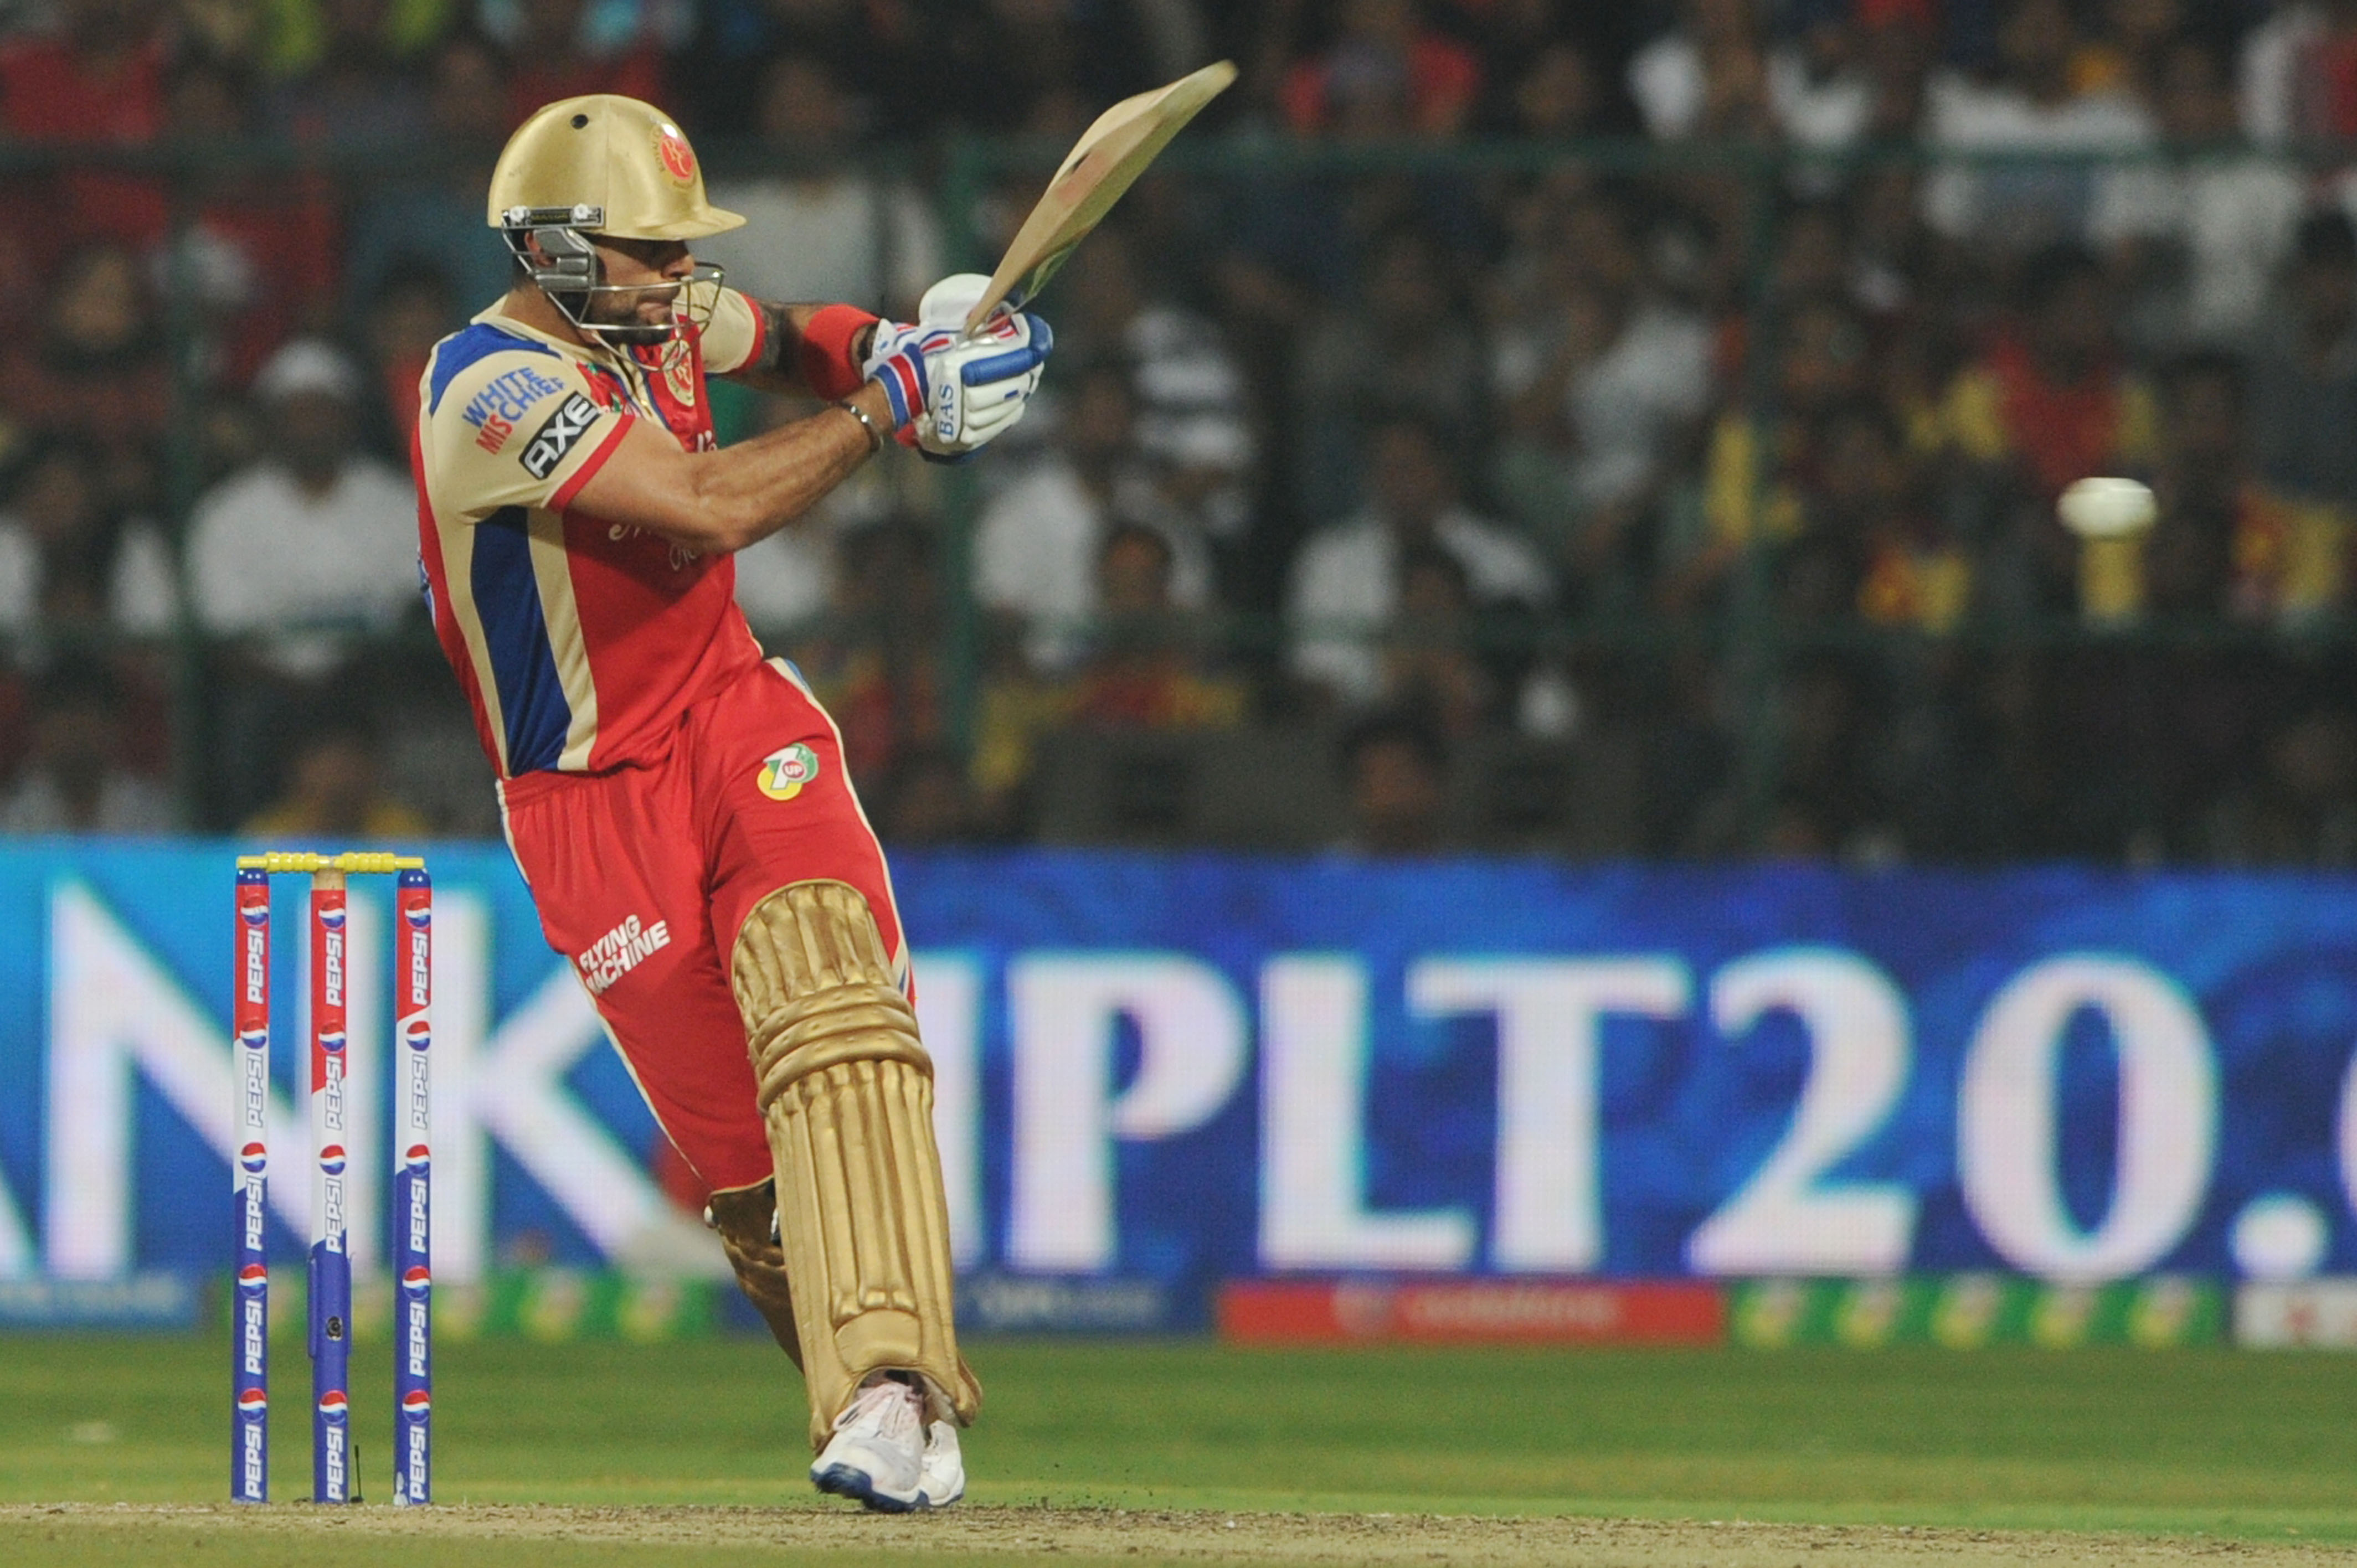 Virat Kohli 99 runs off just 58 balls against Delhidaredevils in 2013